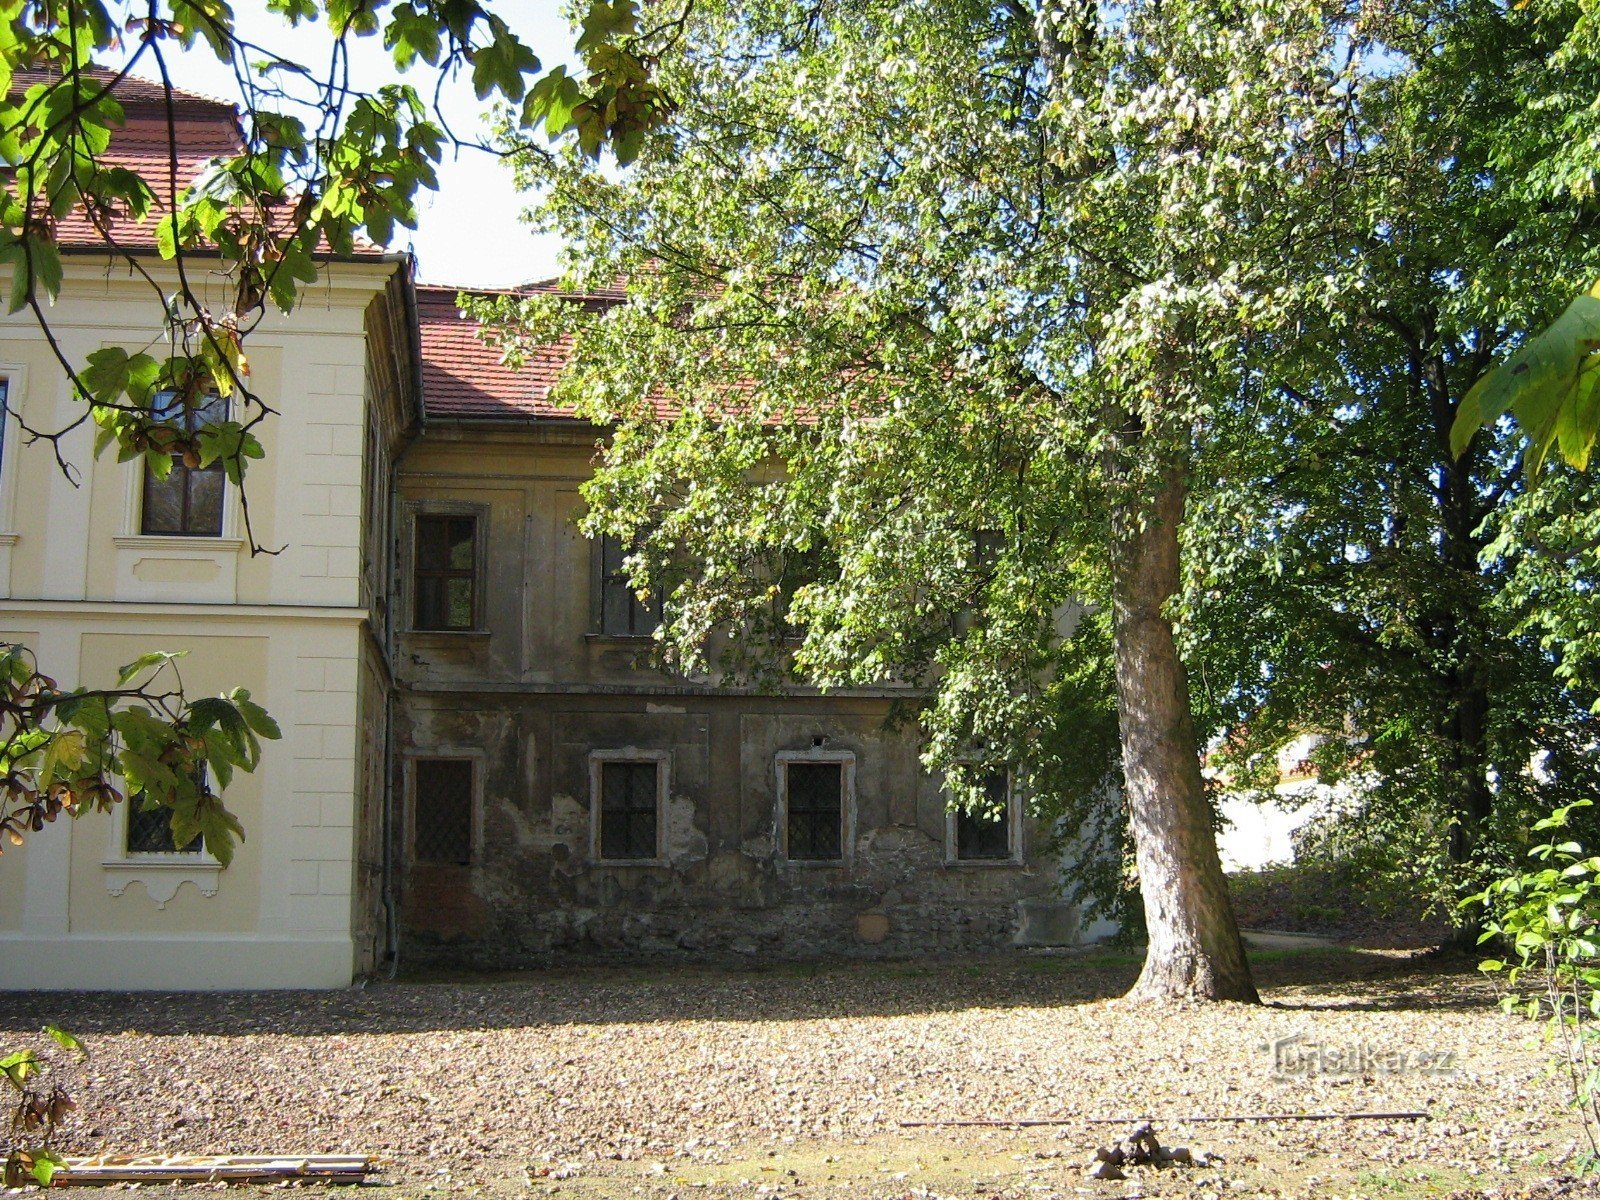 Castelul Mirošov